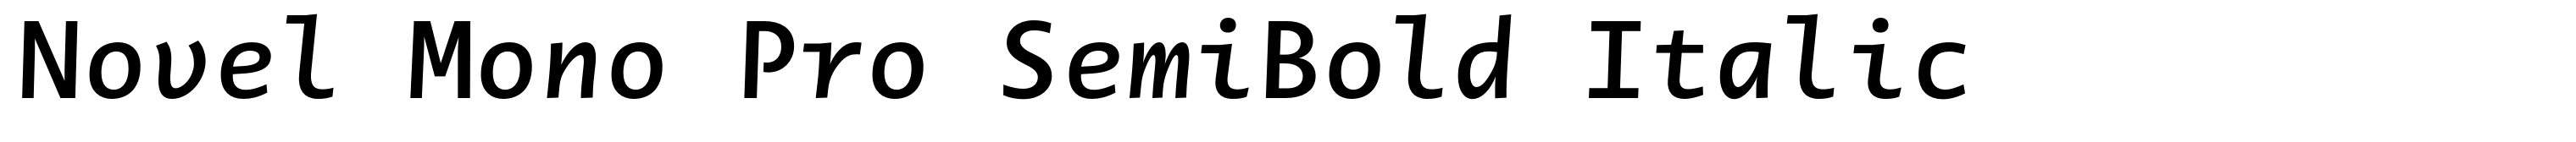 Novel Mono Pro SemiBold Italic